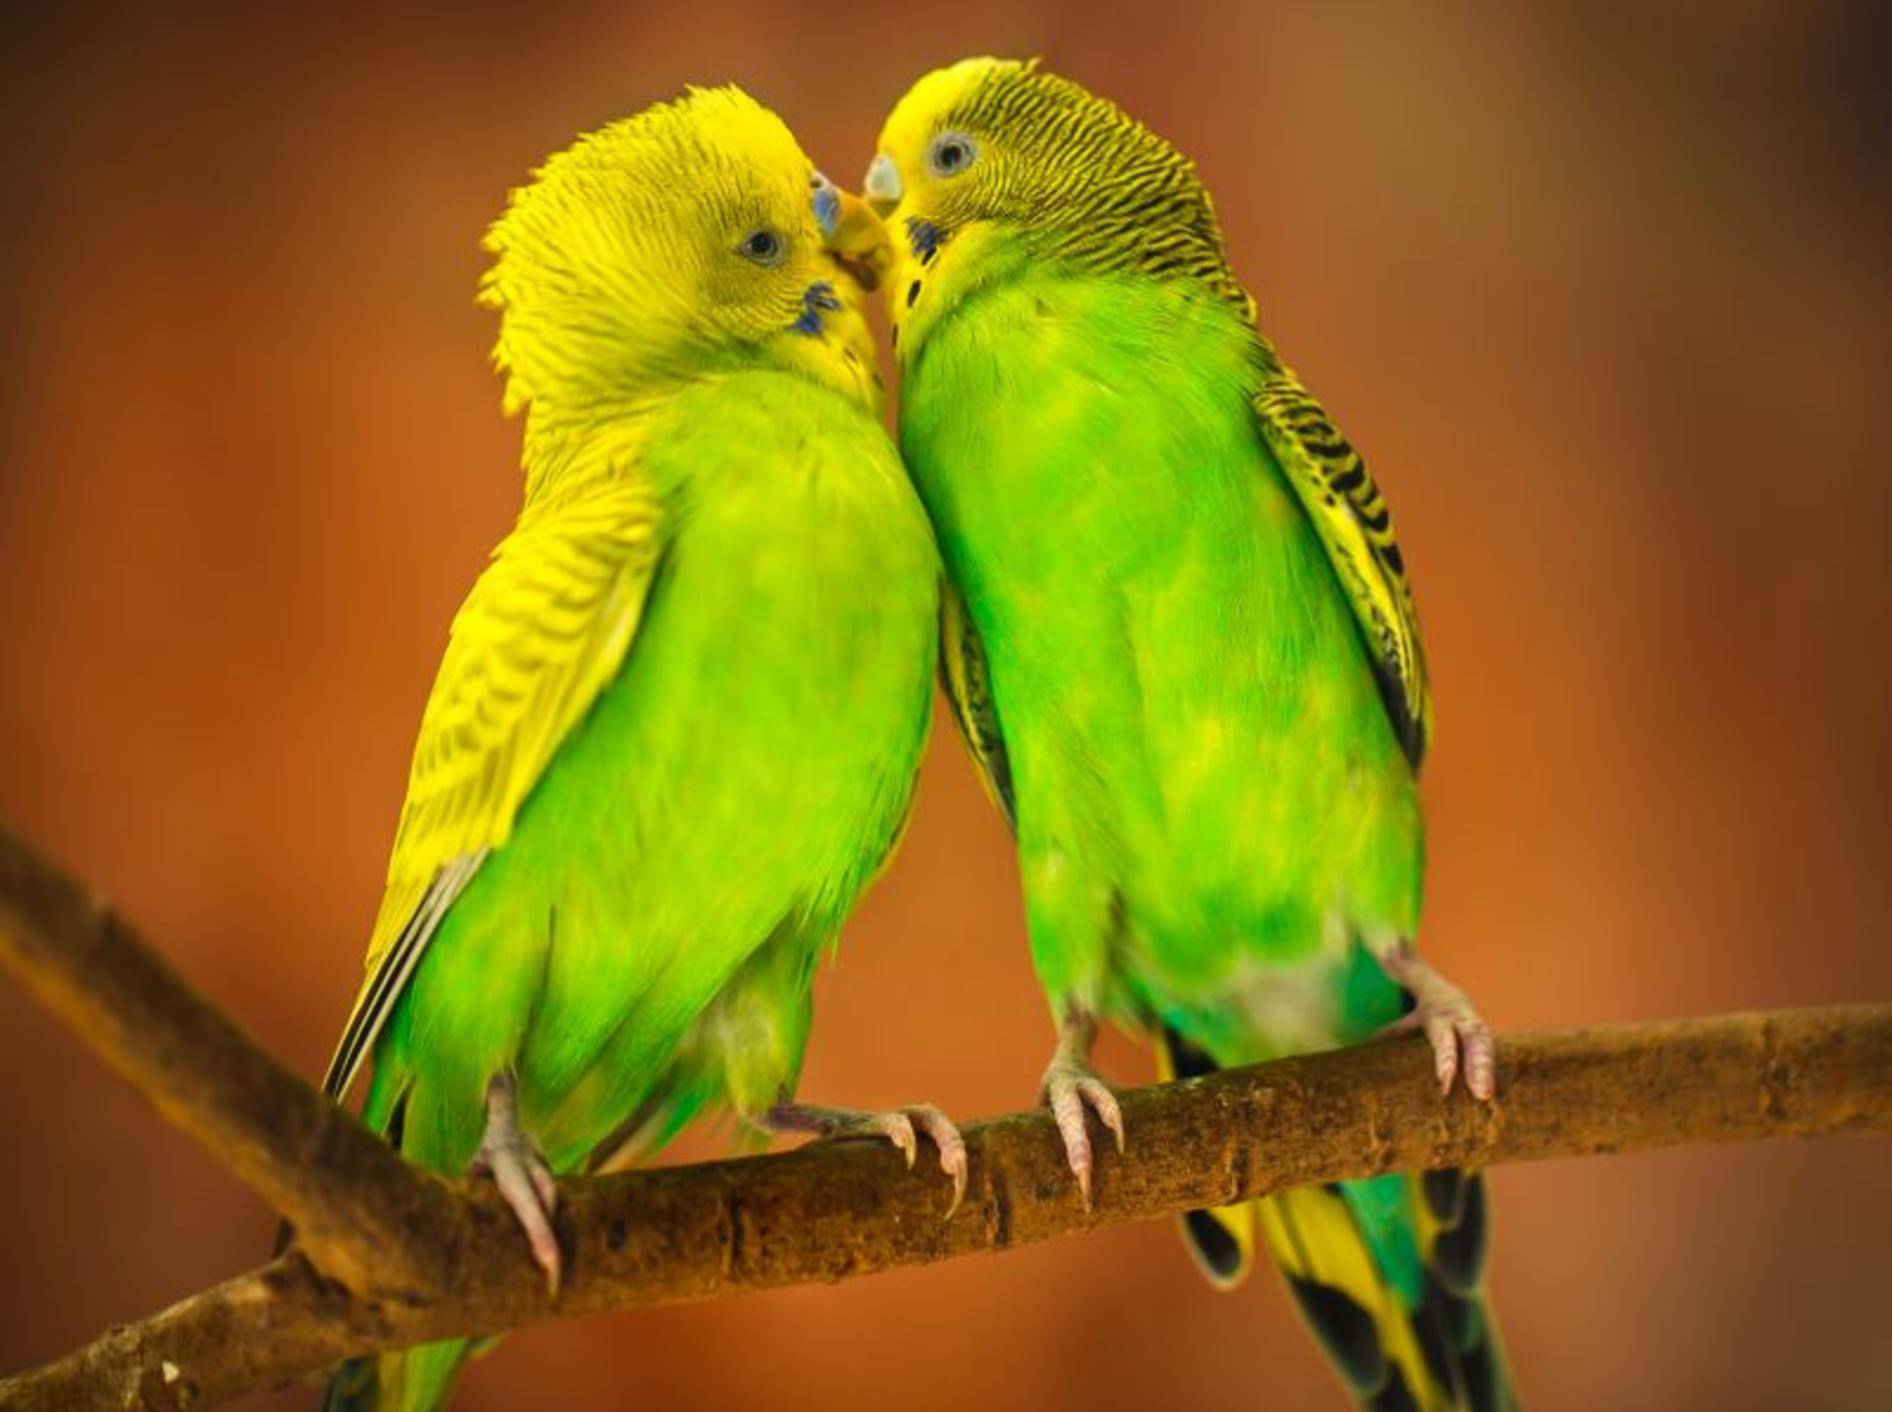 Schöner Anblick: Ein Wellensittichpaar in leuchtenden Gelb- und Grüntönen – Bild: Shutterstock / Patrick Foto